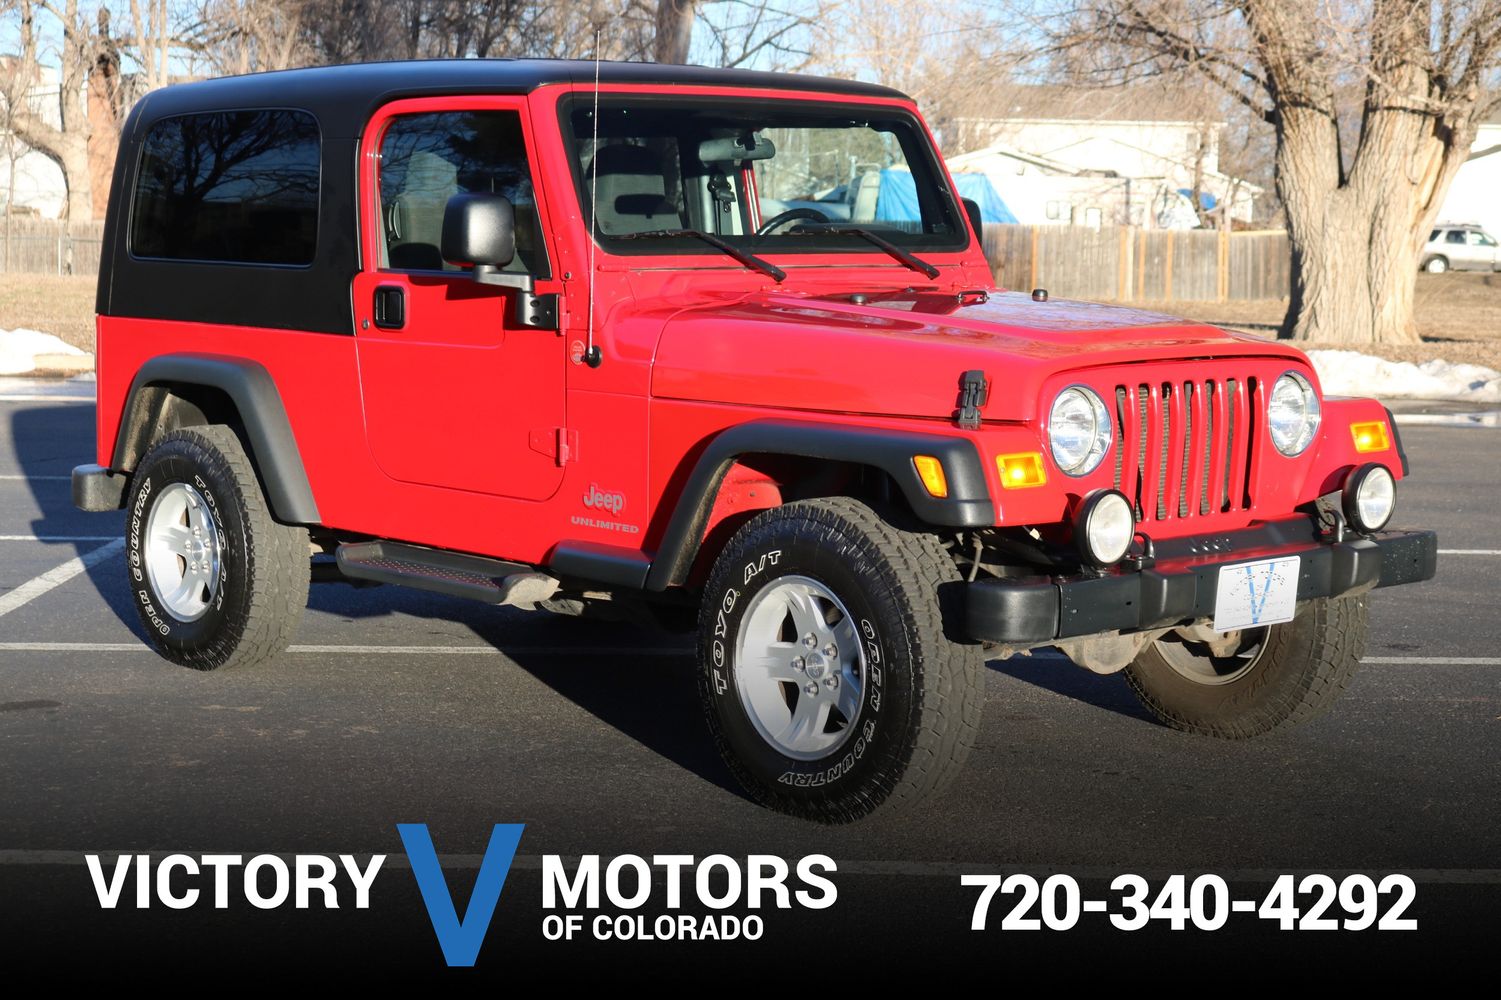 2005 Jeep Wrangler Unlimited | Victory Motors of Colorado